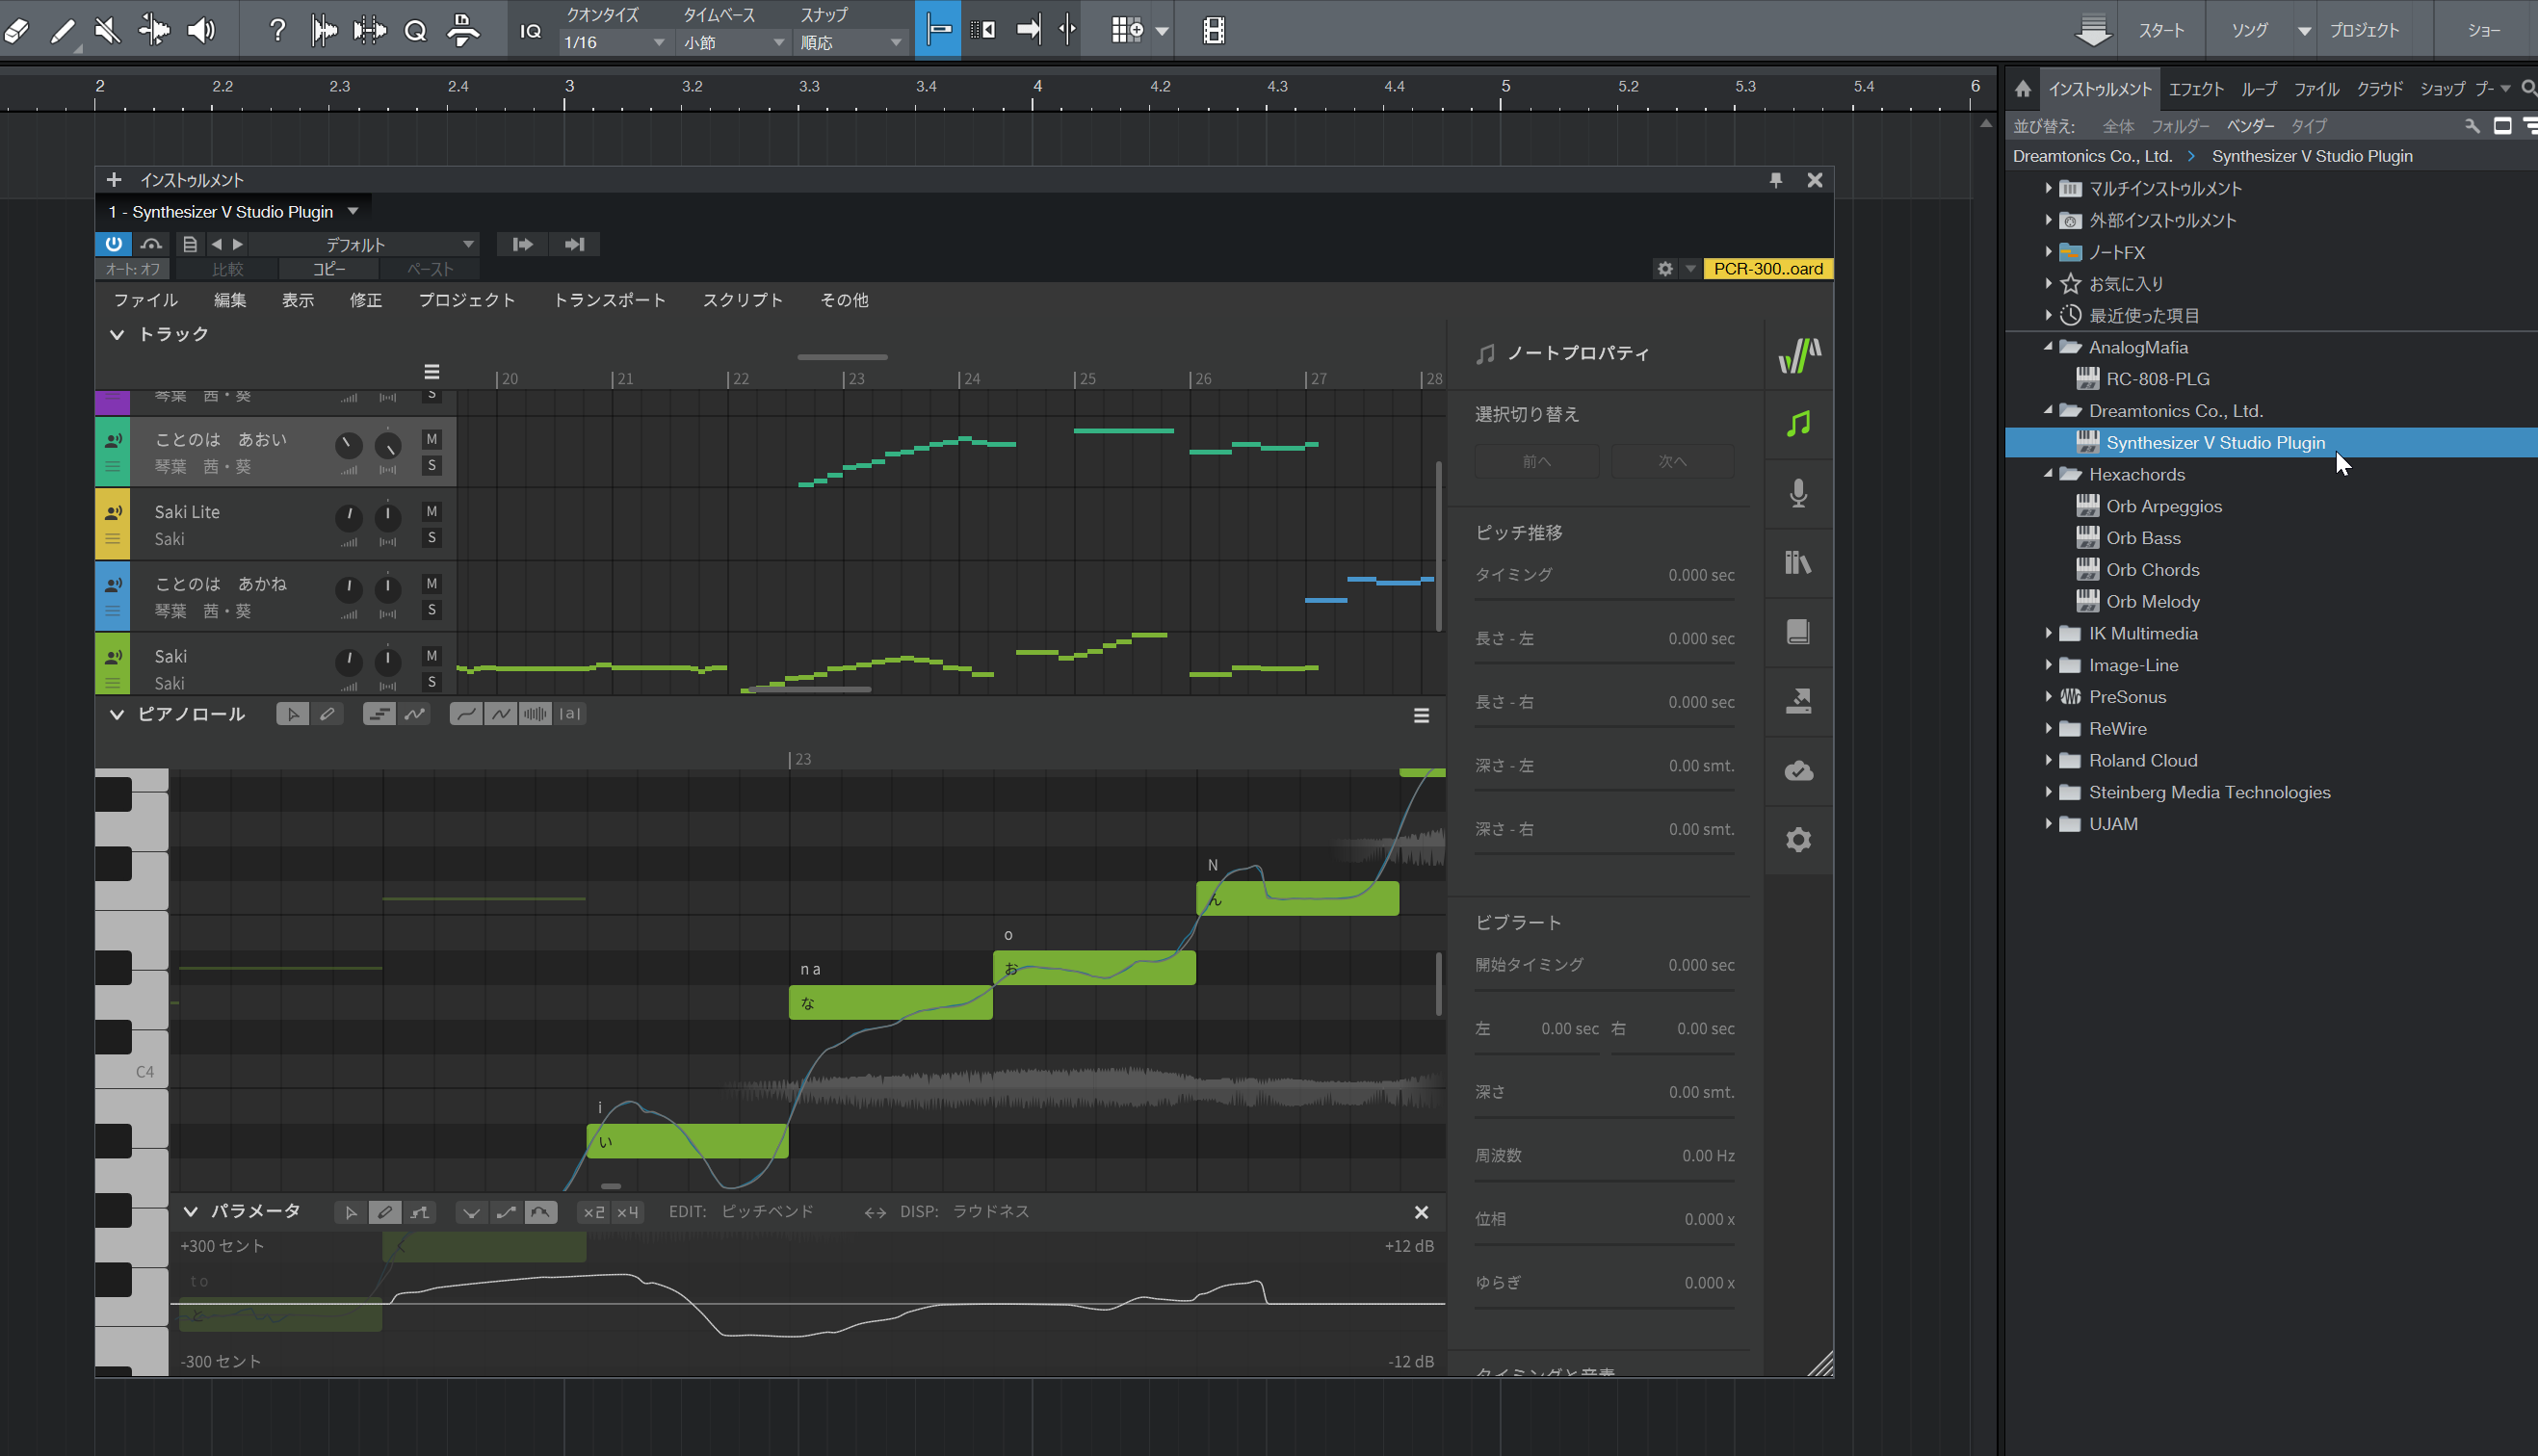 新世代歌声合成ソフトSynthesizer V Studio ProがアップデートしVST3/AUに対応 | DTMステーション